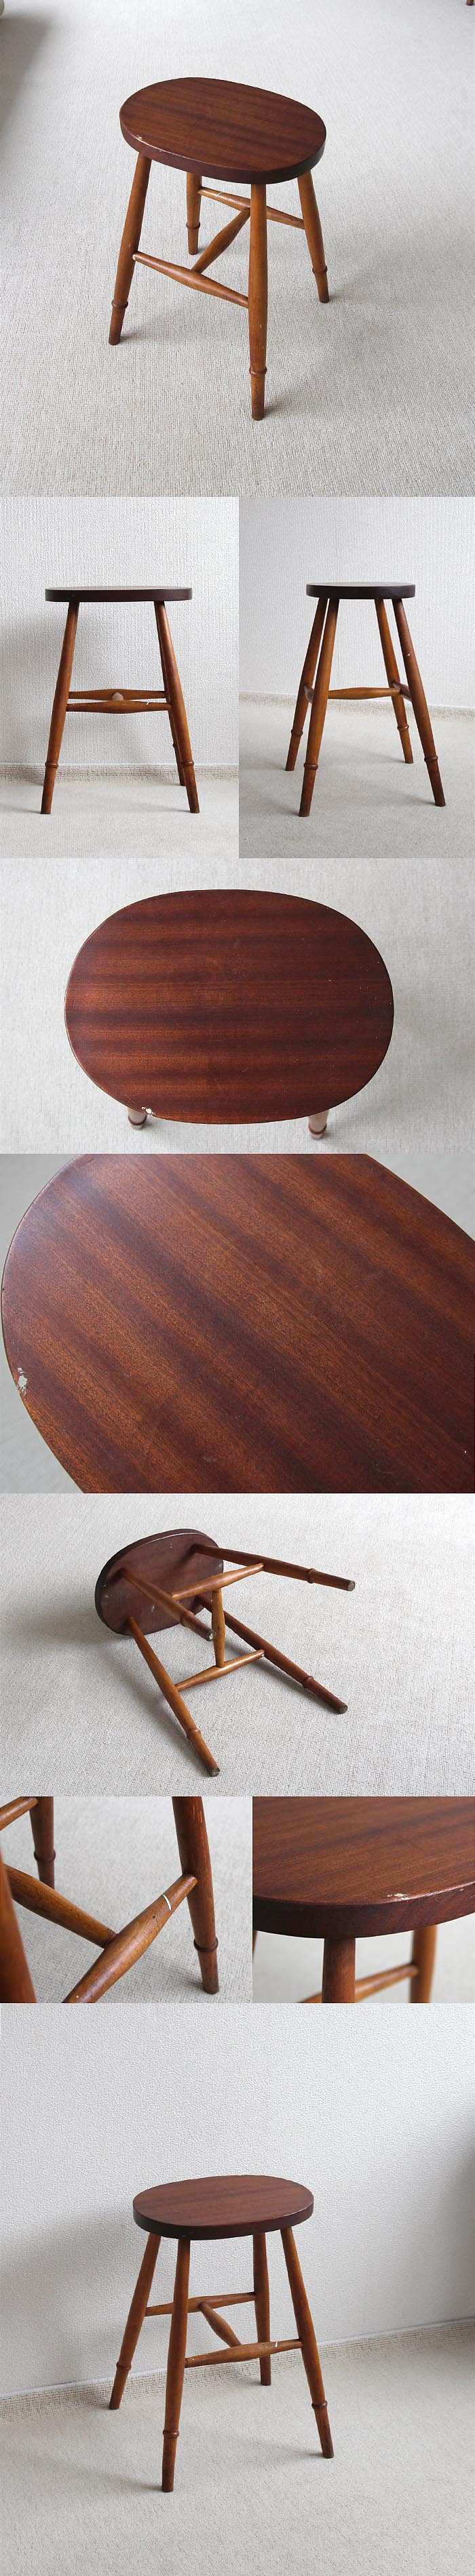 イギリス ヴィンテージ ウッドスツール 木製椅子 カントリー 花台 アンティーク 家具 「一枚板座面」V-727